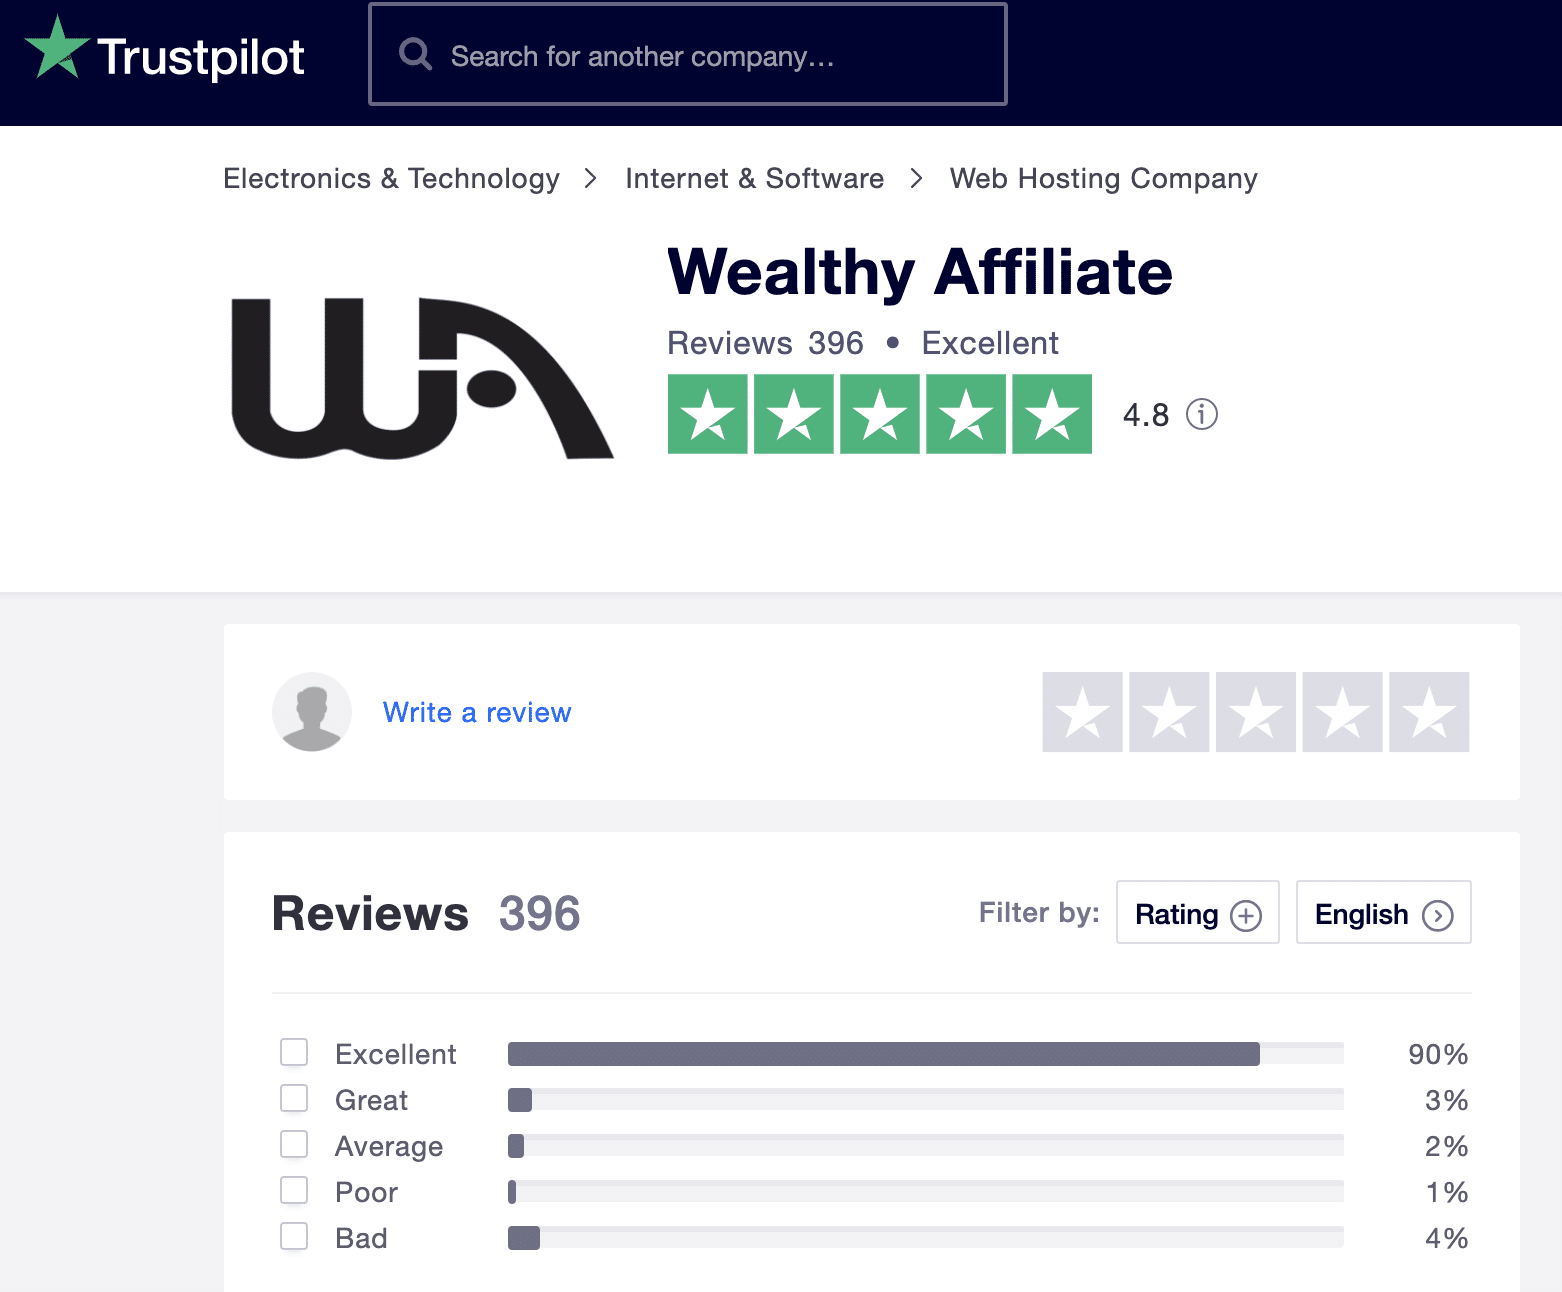 Wealthy Affiliate Trustpilot ratings